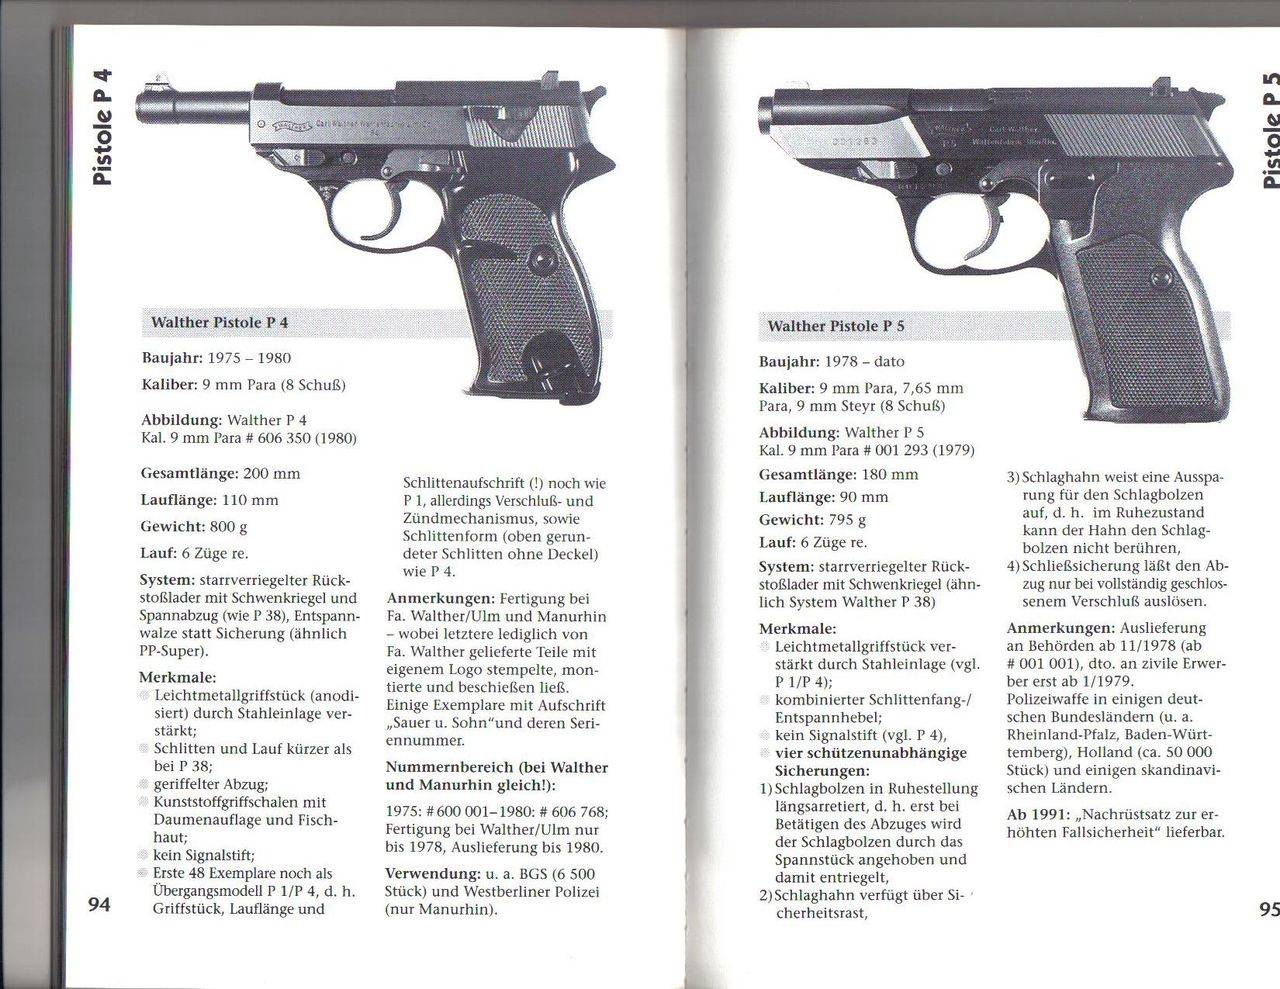 ✅ как выглядит пистолет: маленькие дамские модели, карманный мини револьвер, компактный женский немецкий автоматический калибра 7 25 - ligastrelkov.ru